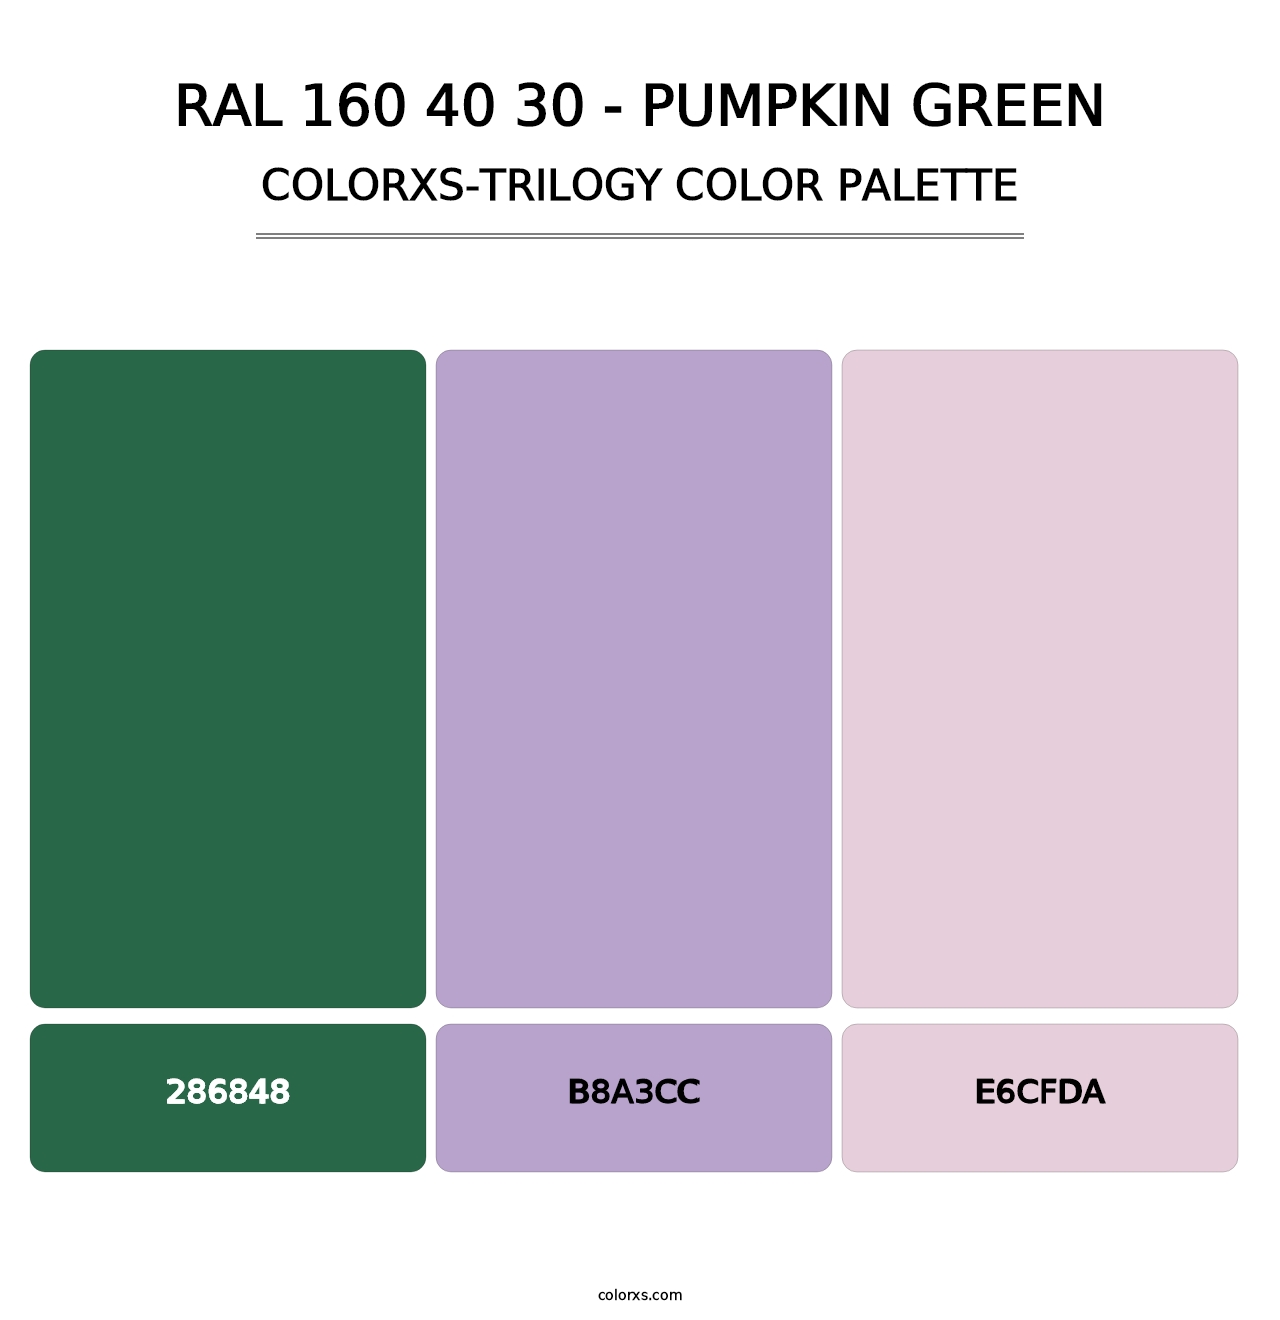 RAL 160 40 30 - Pumpkin Green - Colorxs Trilogy Palette